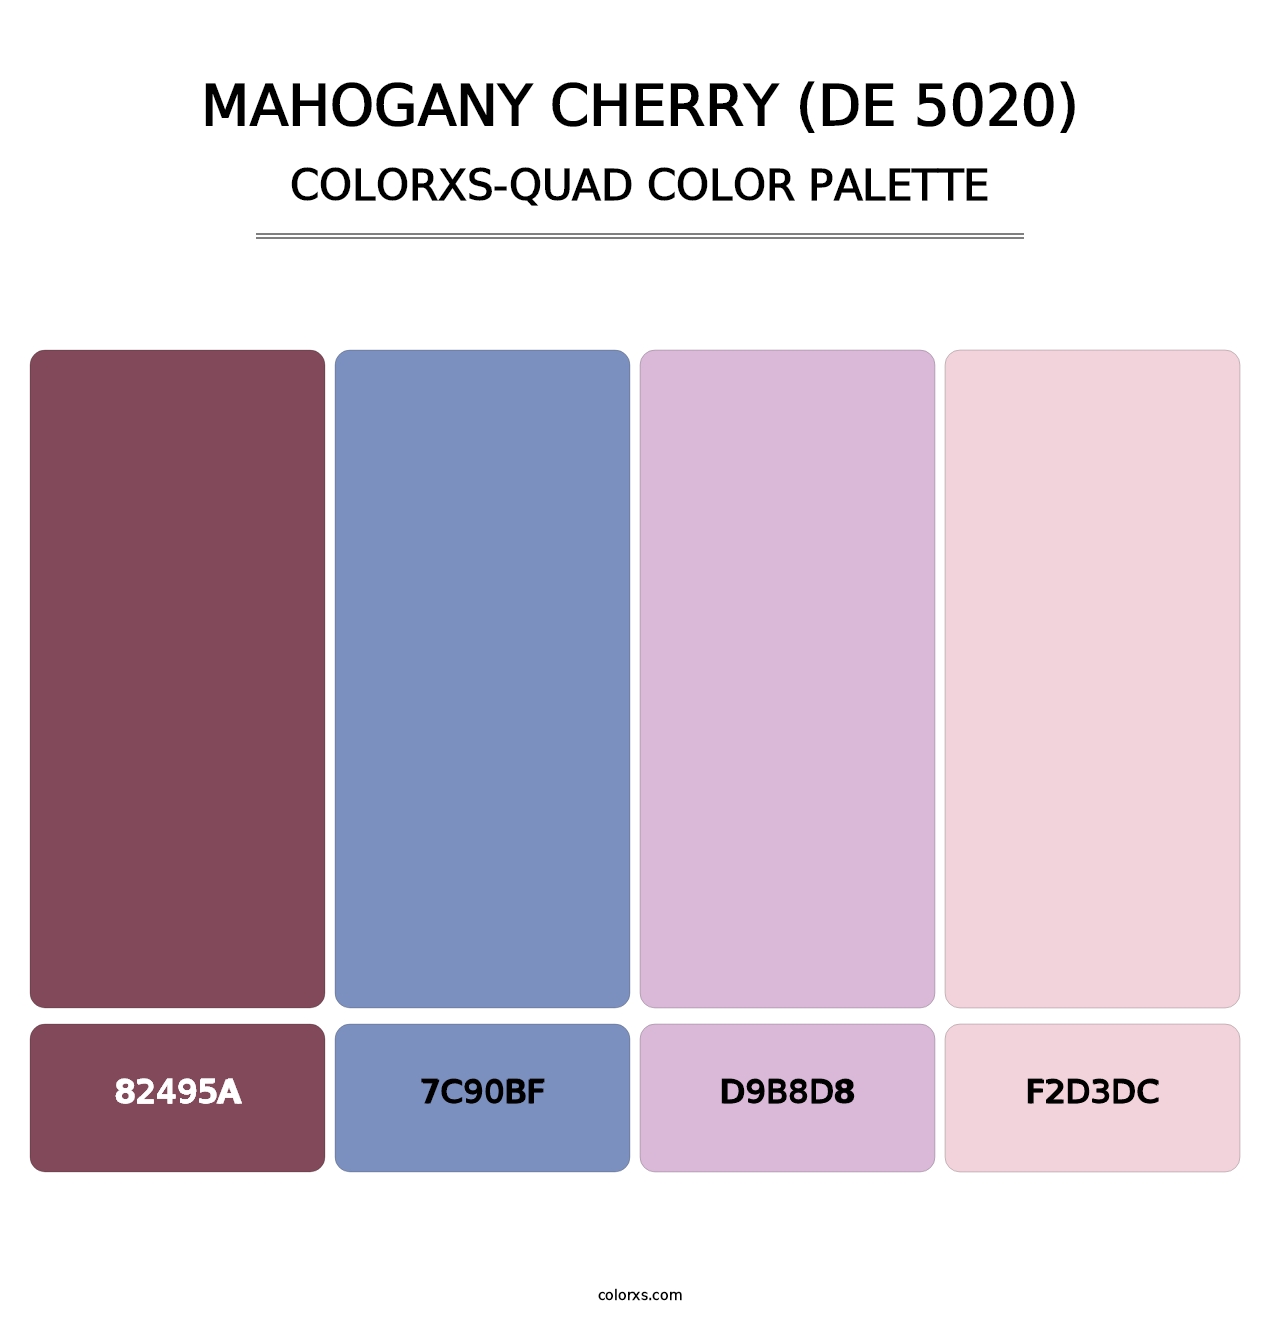 Mahogany Cherry (DE 5020) - Colorxs Quad Palette